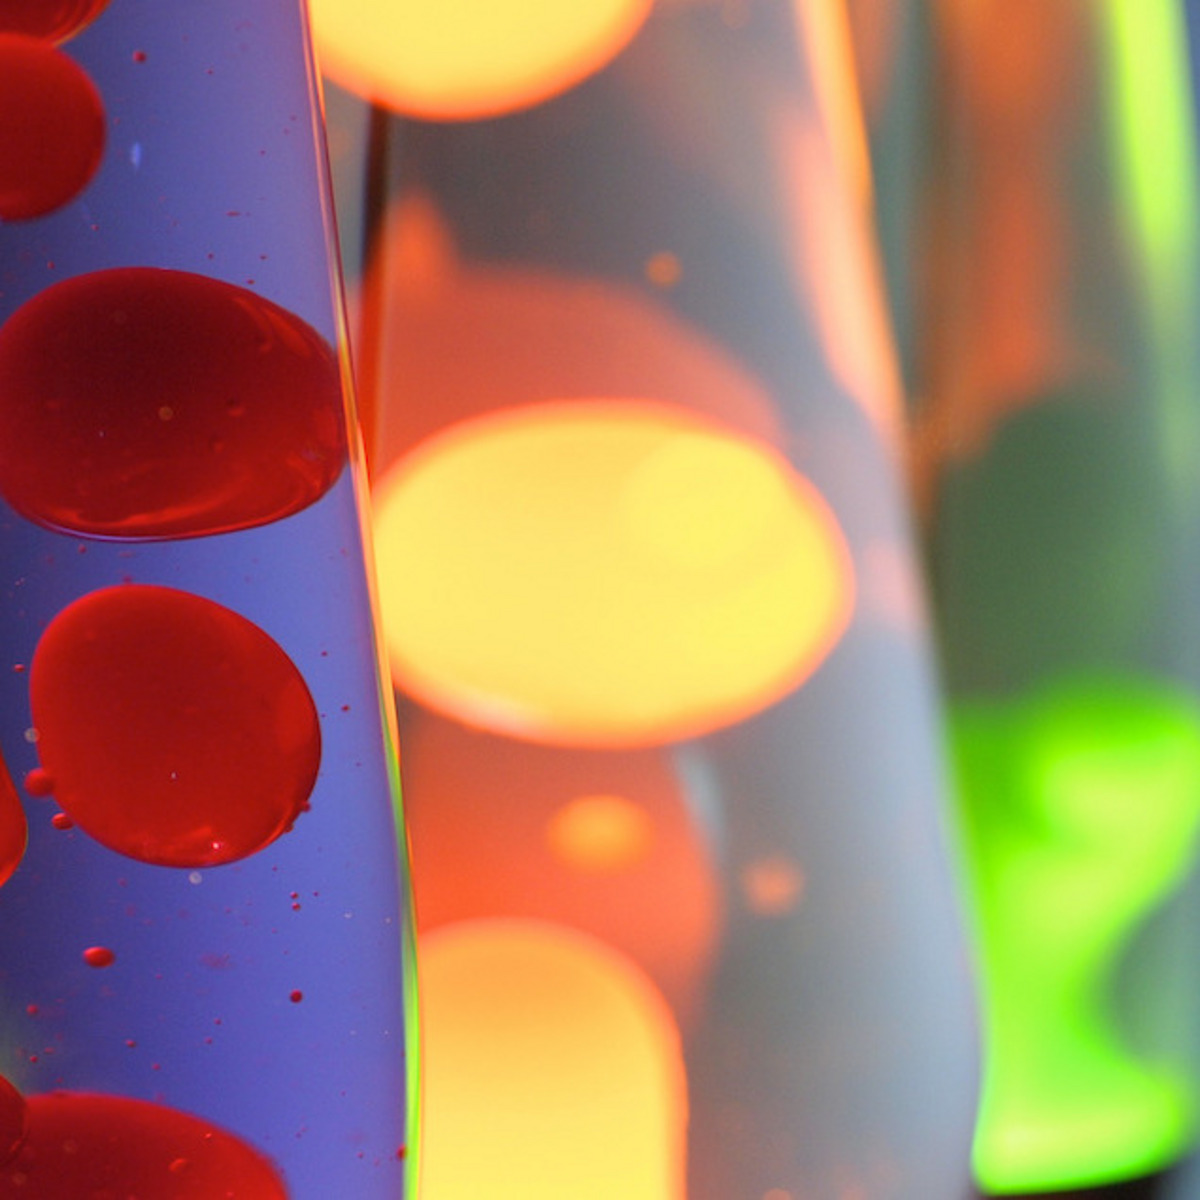 Eine Nahaufnahme einer Lavalampe mit leuchtenden, roten Blasen, die in einer klaren Flüssigkeit schweben. Im Hintergrund sind verschwommene Lichter in Gelb und Grün von weiteren Lavalampen zu sehen.